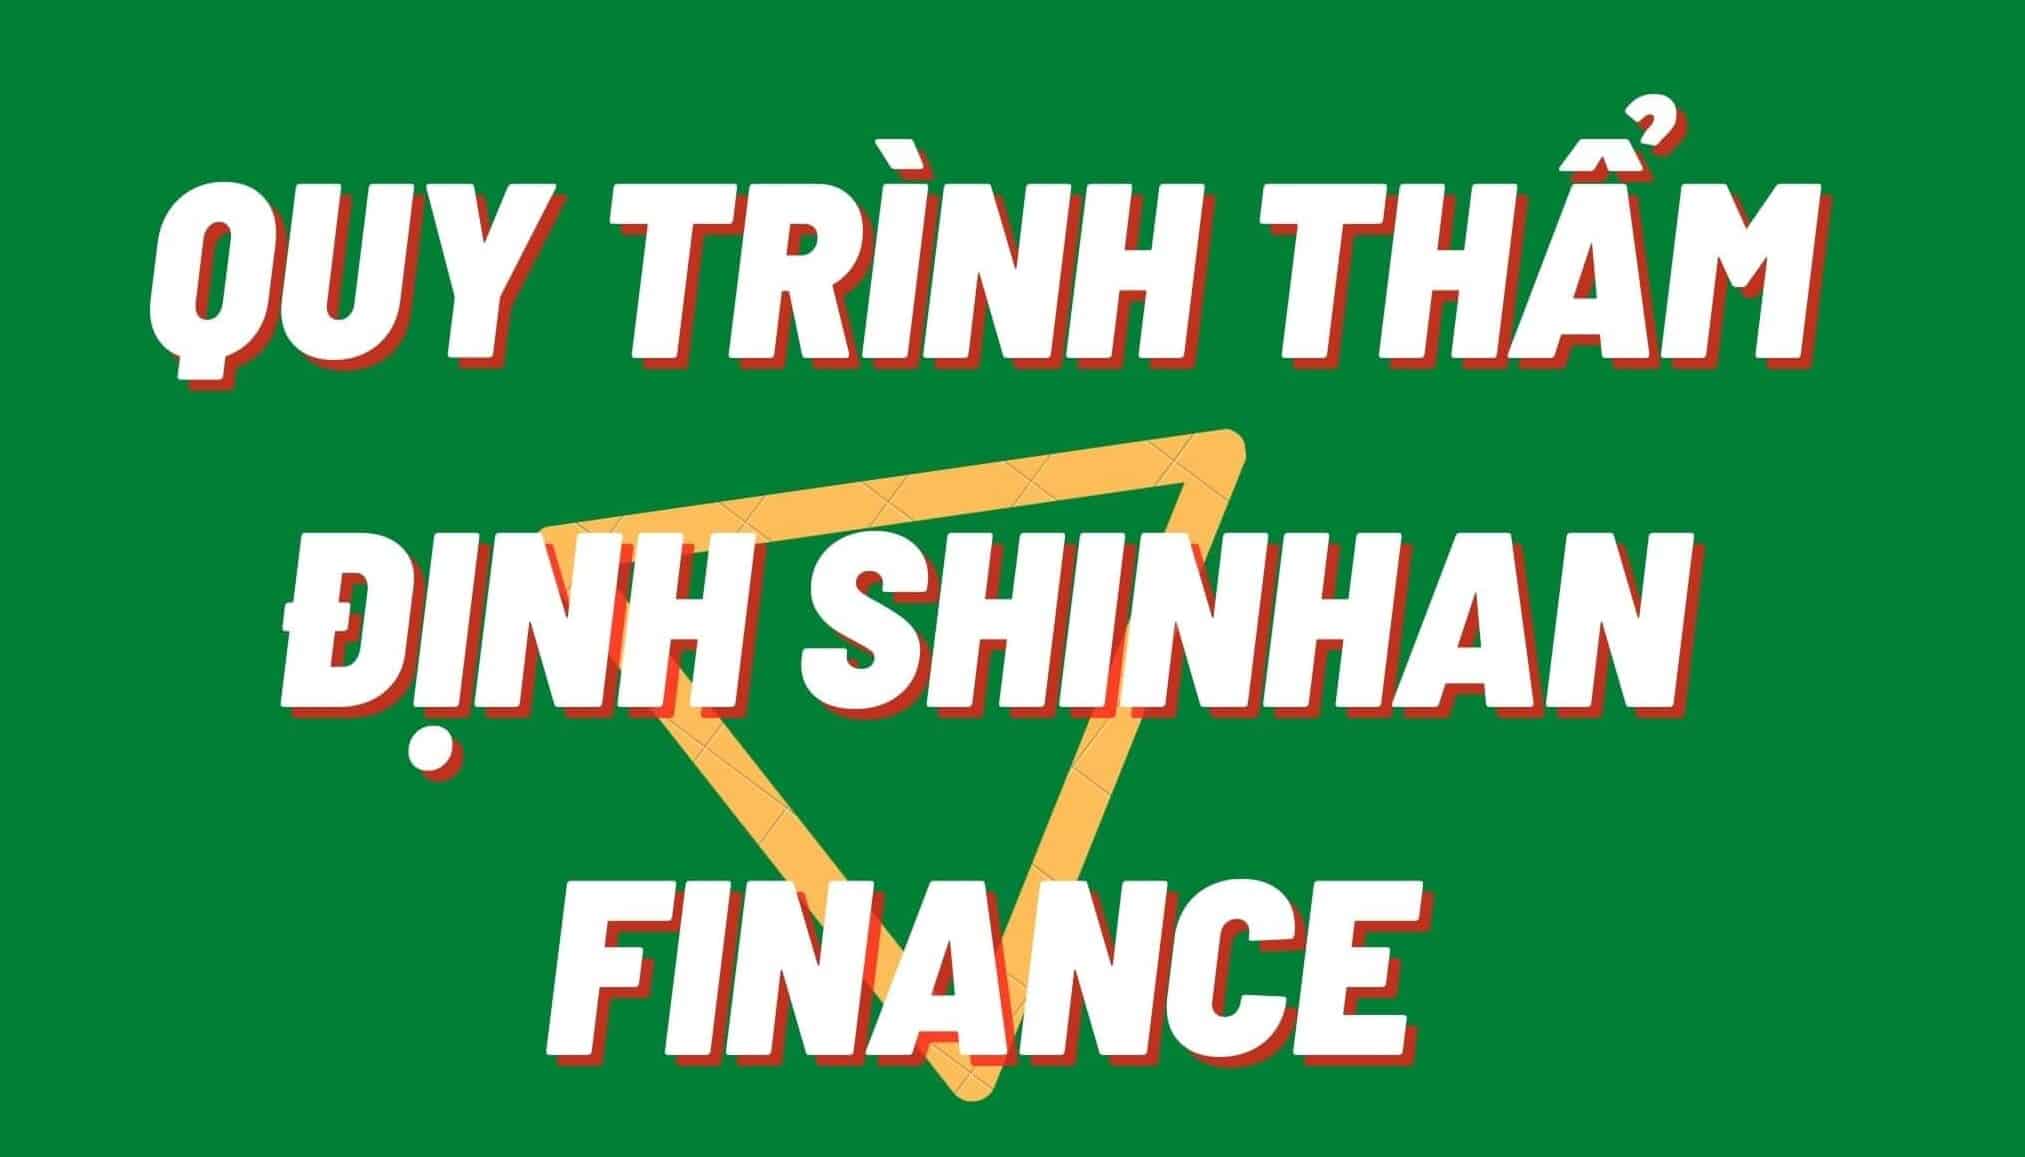 Quy trình thẩm định Shinhan Finance